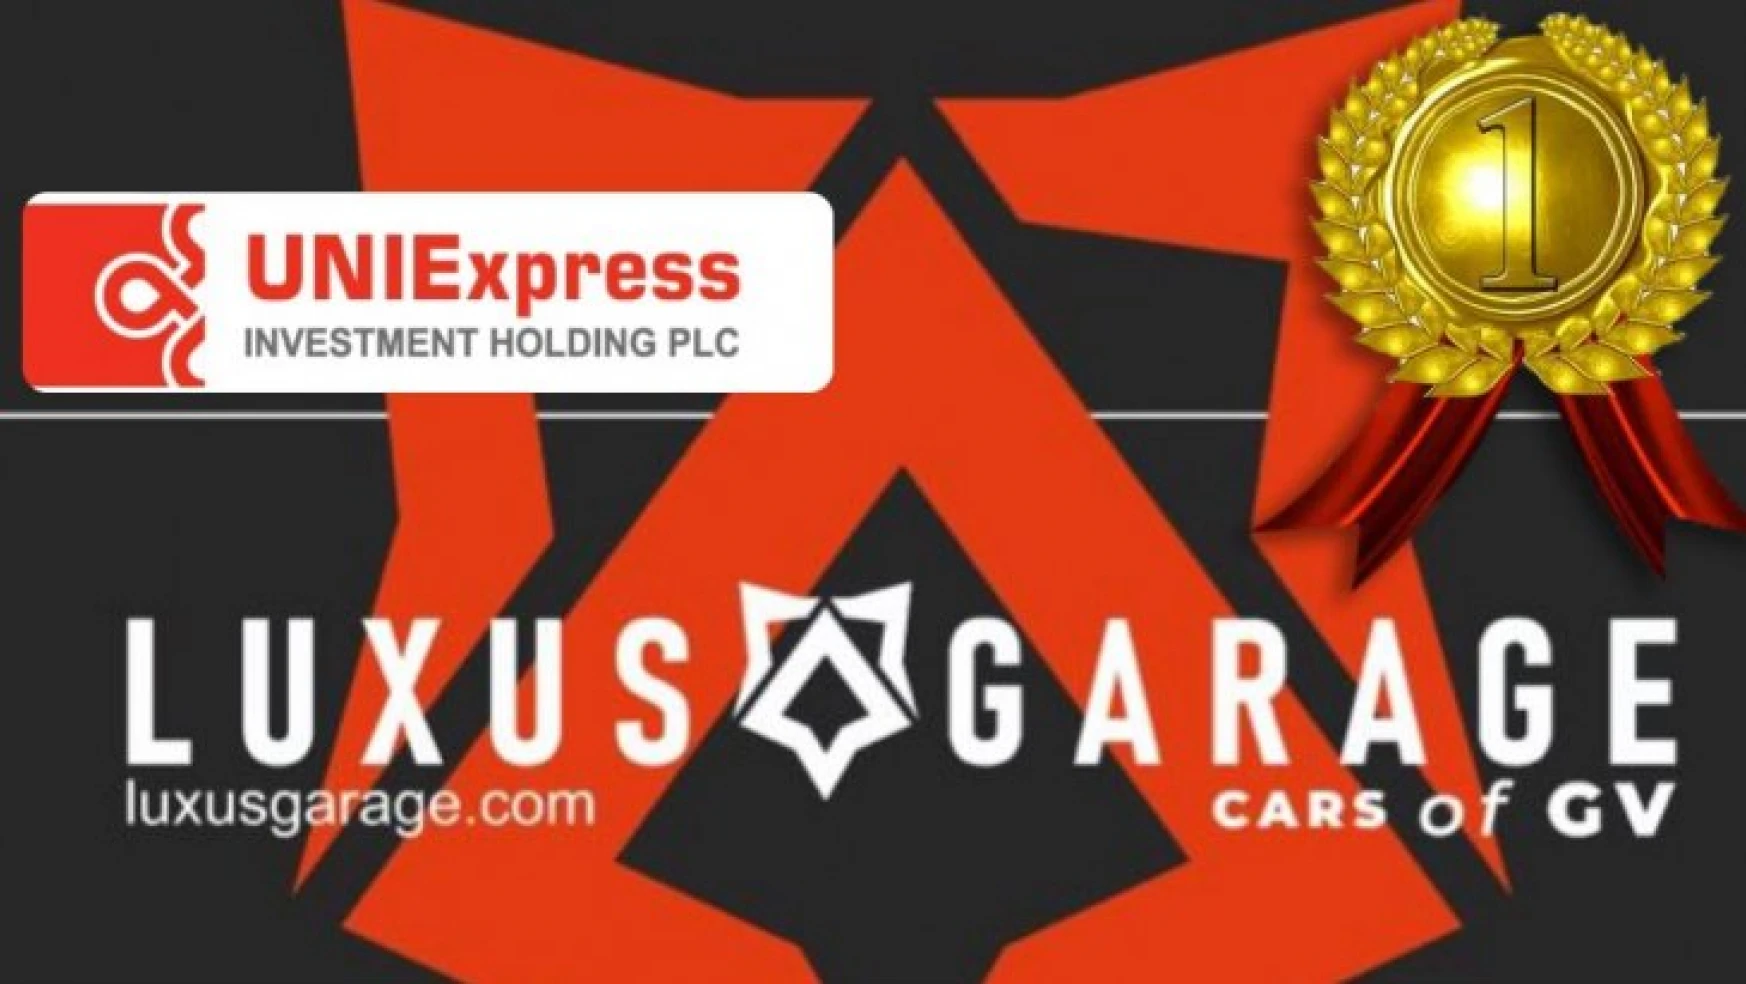 Luxus Garage ve uniexpress Bank Gürkan Vural ile Güven veriyor